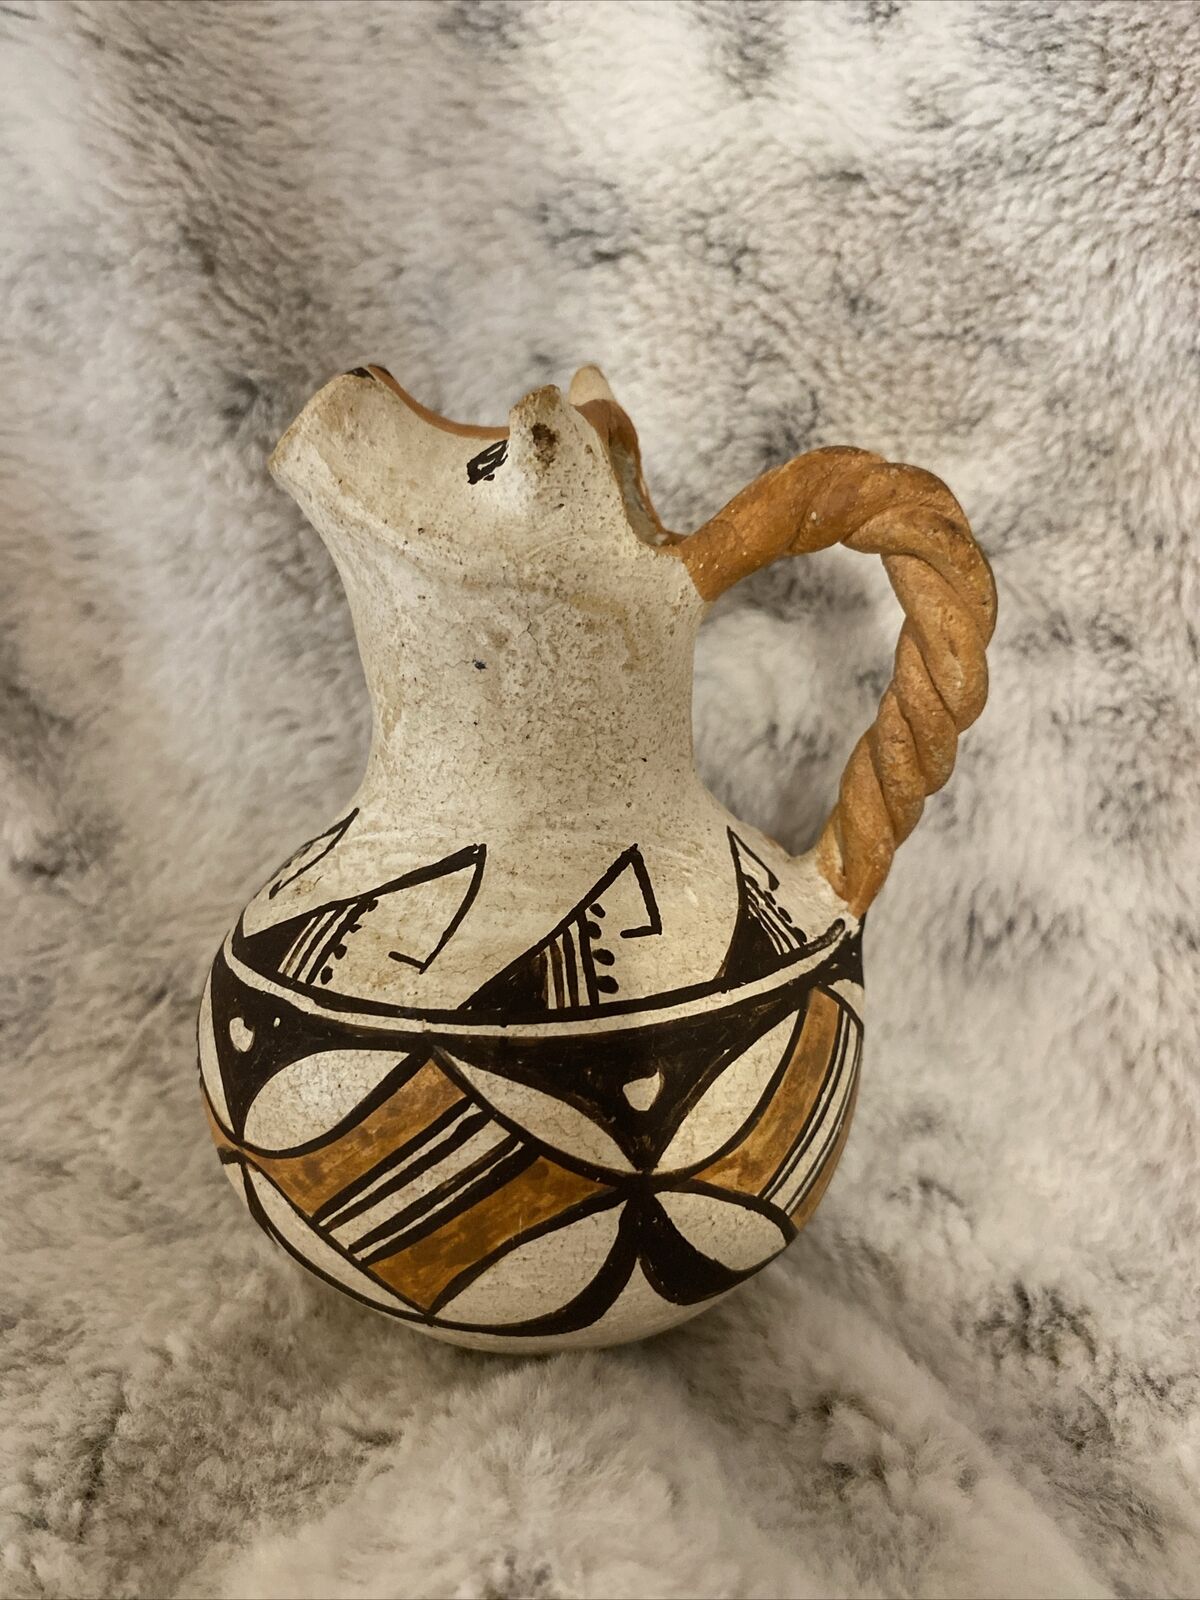 acoma pueblo indian pottery